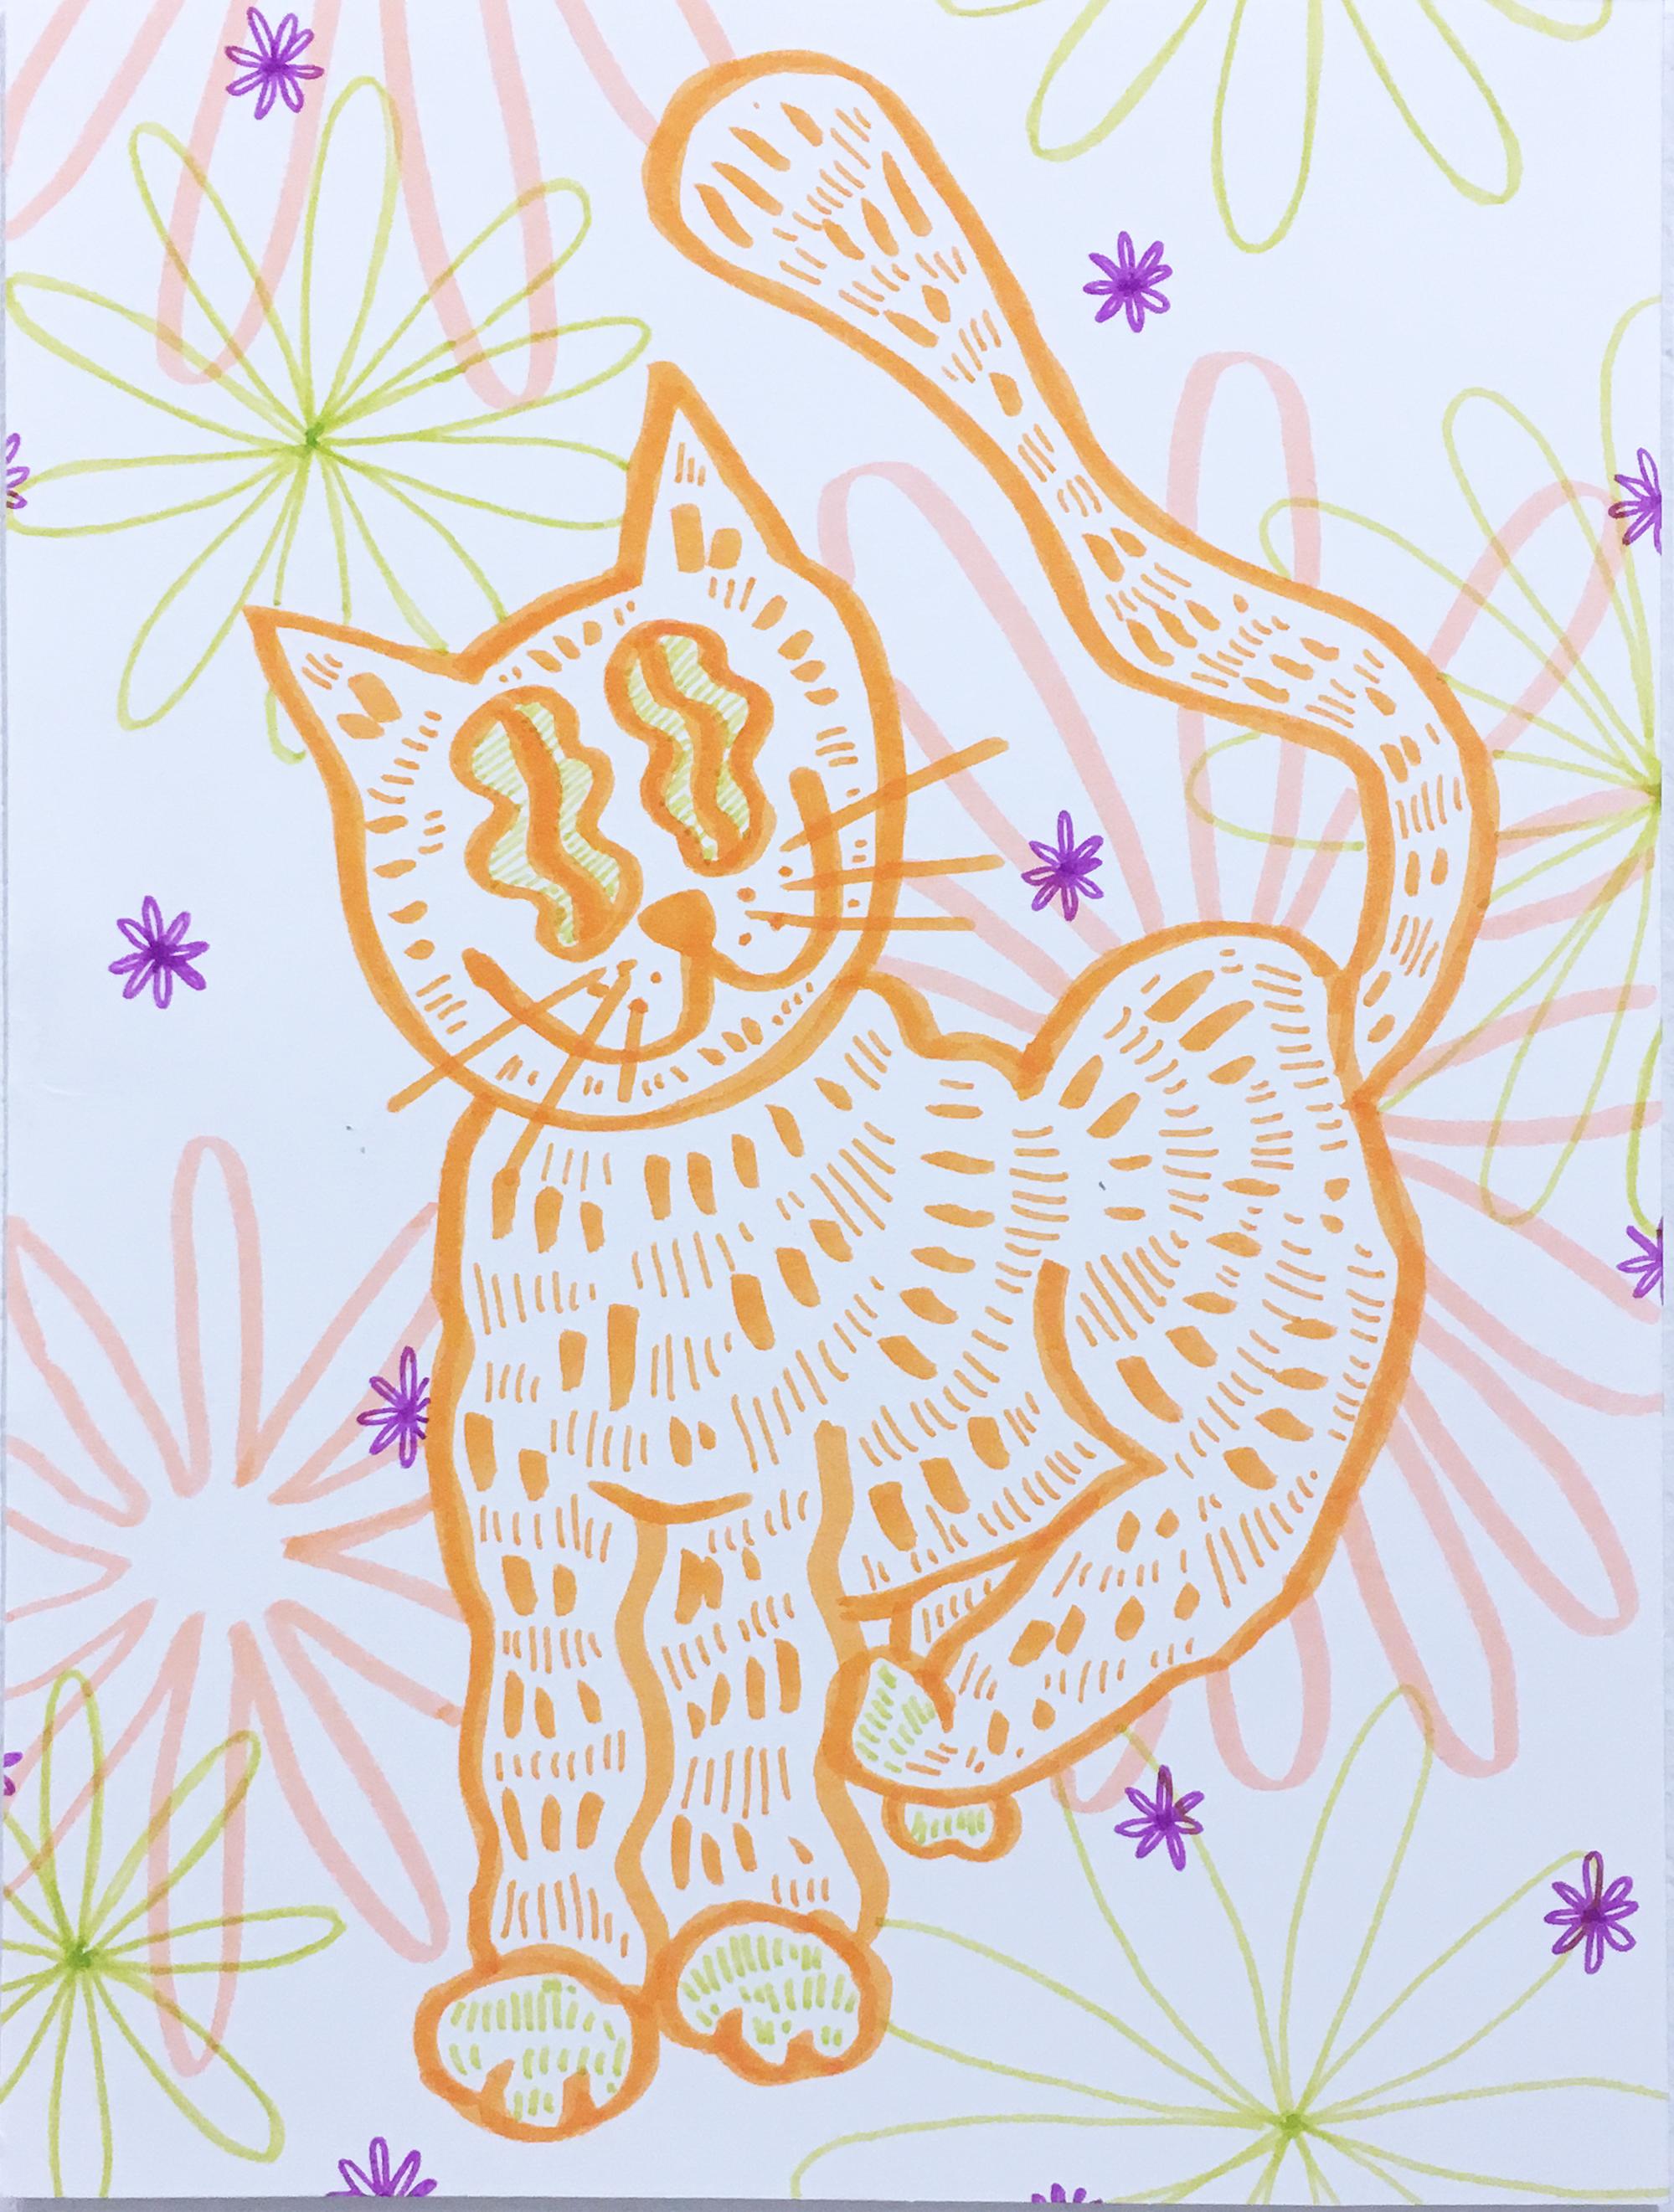 Figurative Art SarahGrace - Soft and Fuzzy, dessin sur papier à l'aquarelle, chat avec fleurs, motif graphique ondulé